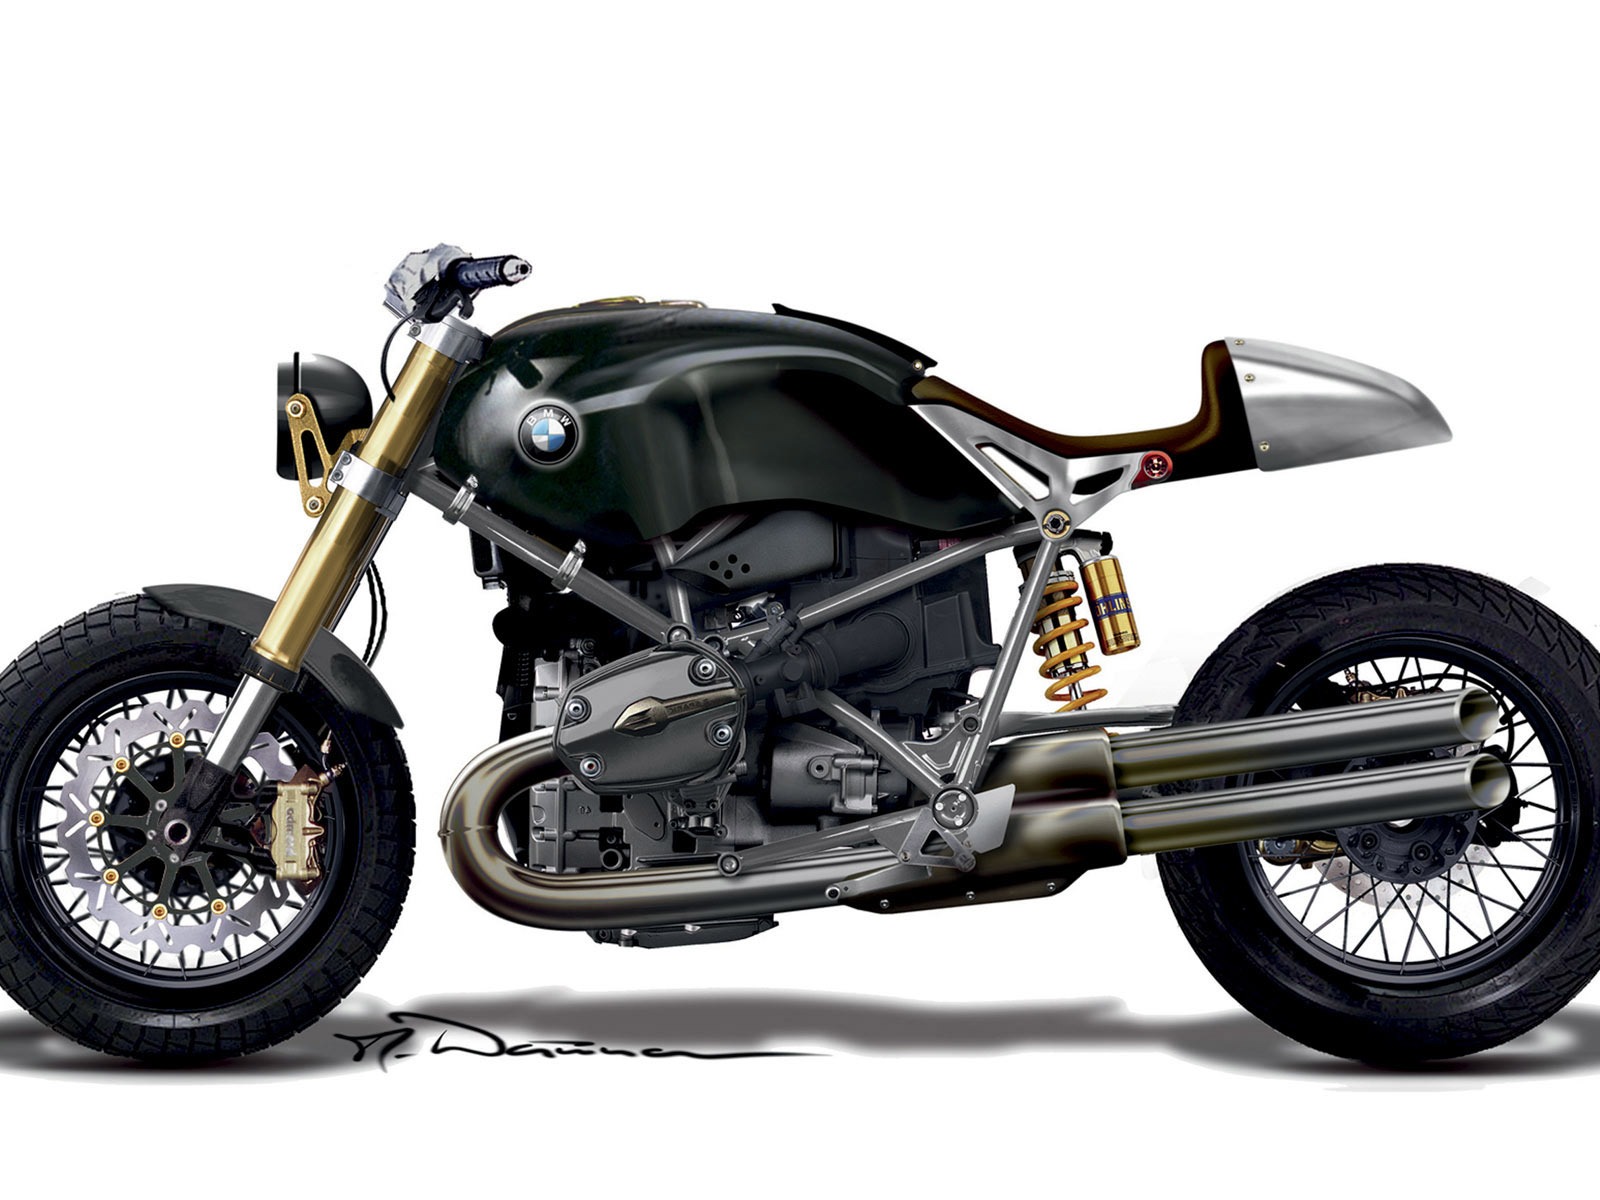 Concepto Fondos de motos (1) #13 - 1600x1200